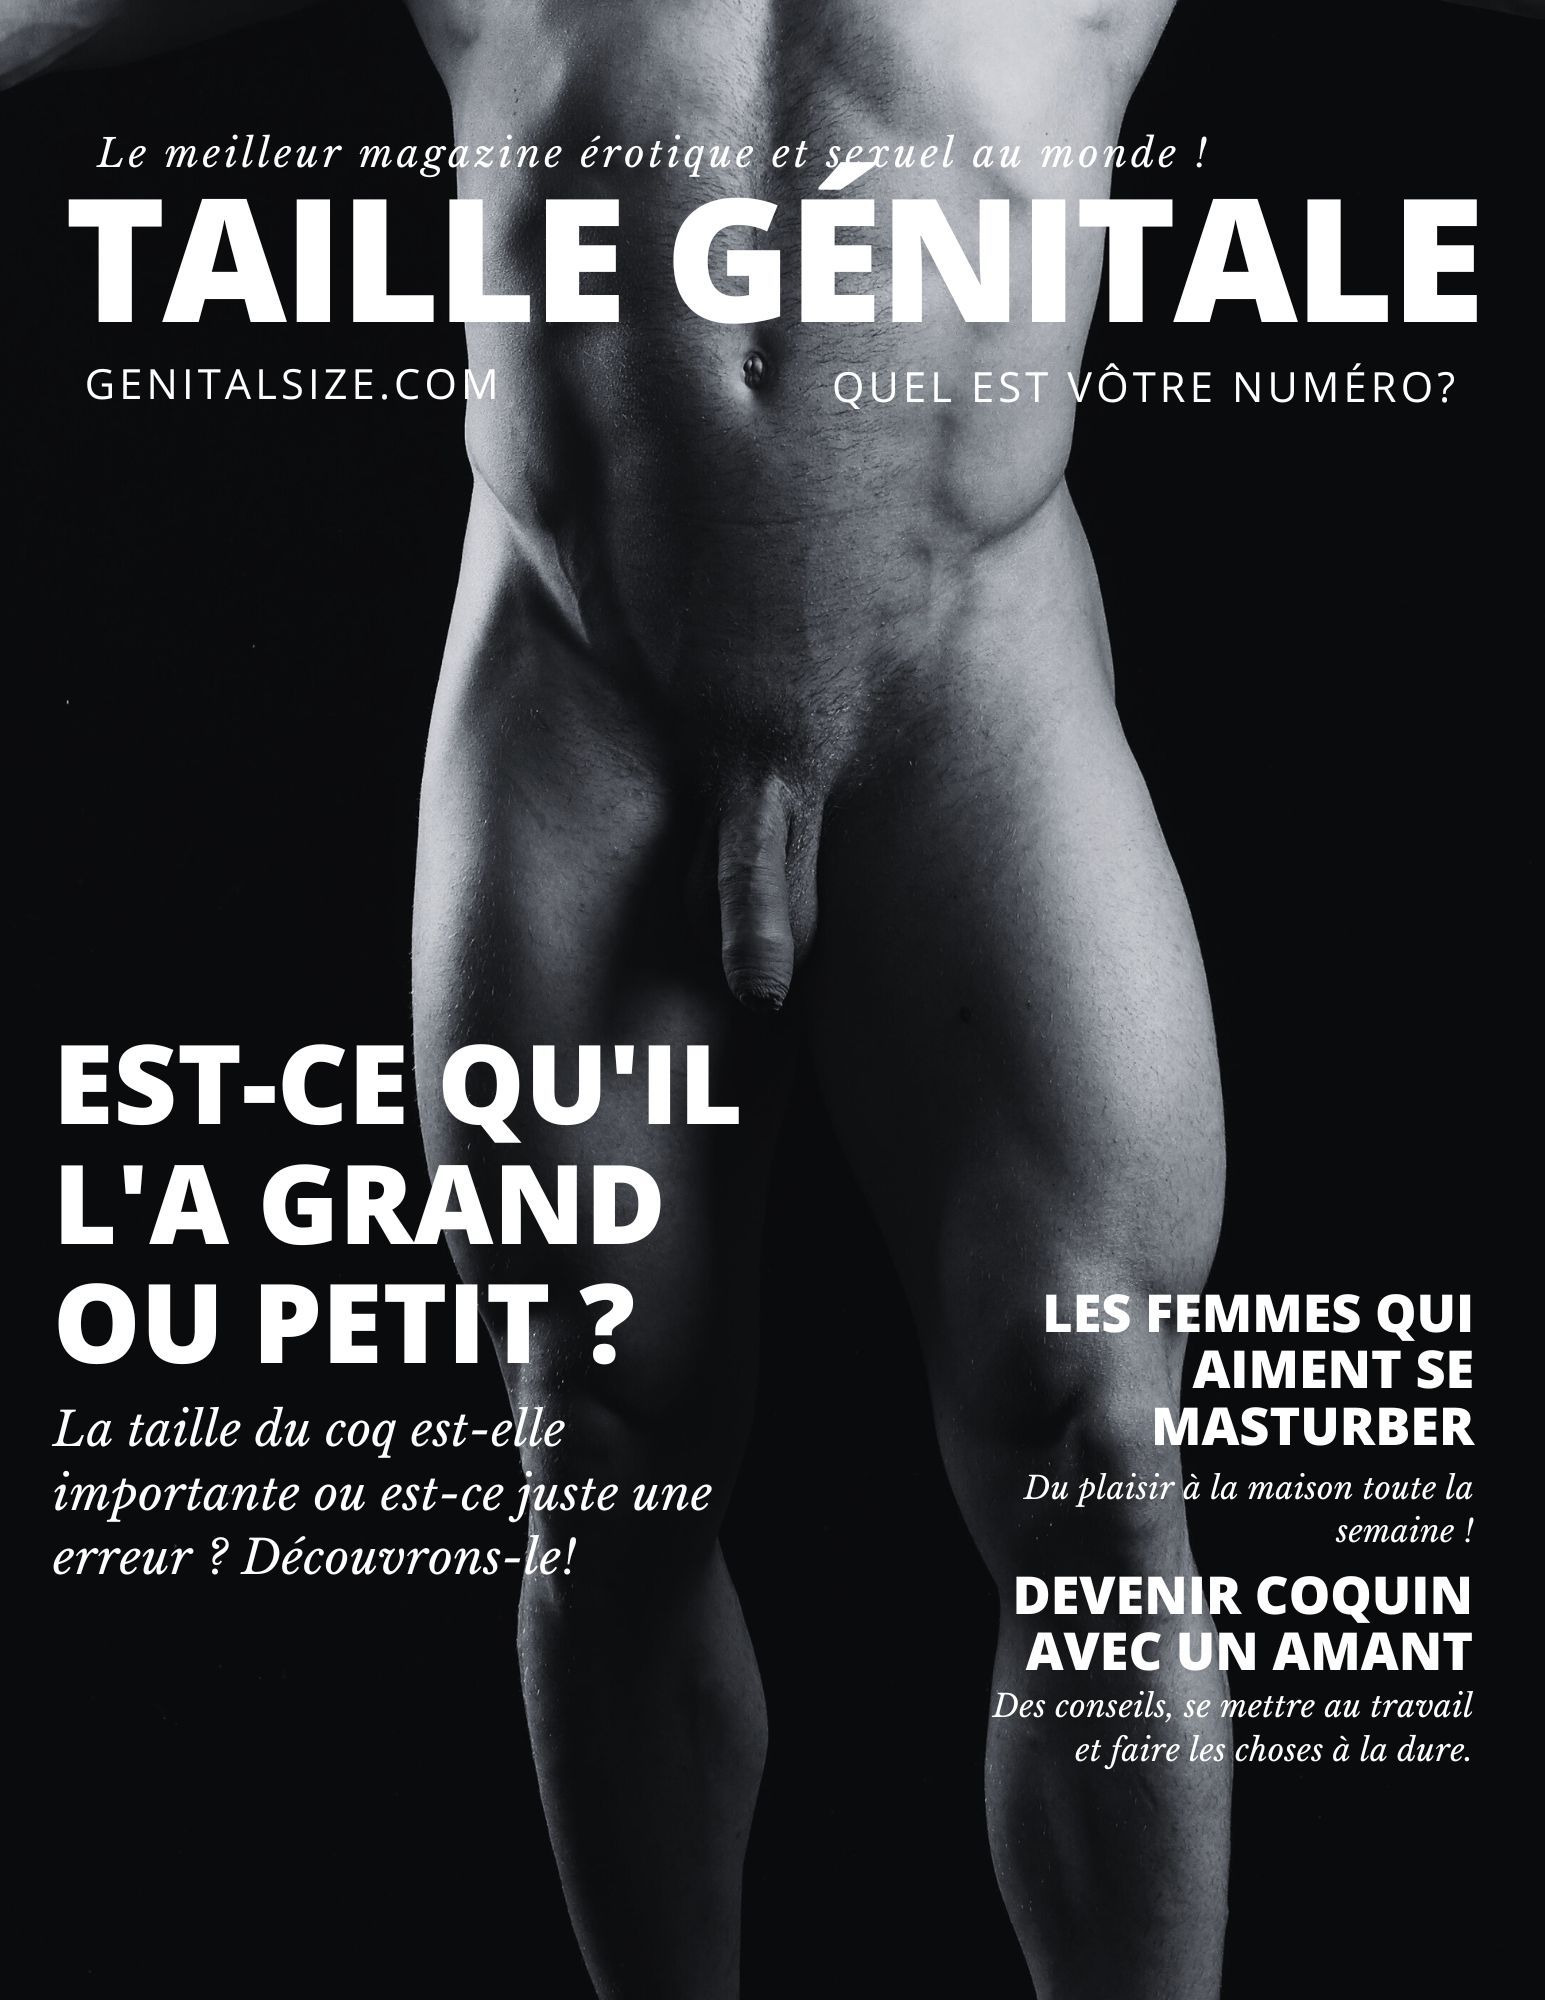 Couverture de magazine présentant un torse masculin nu, posant la question quelle est la taille de son pénis ?